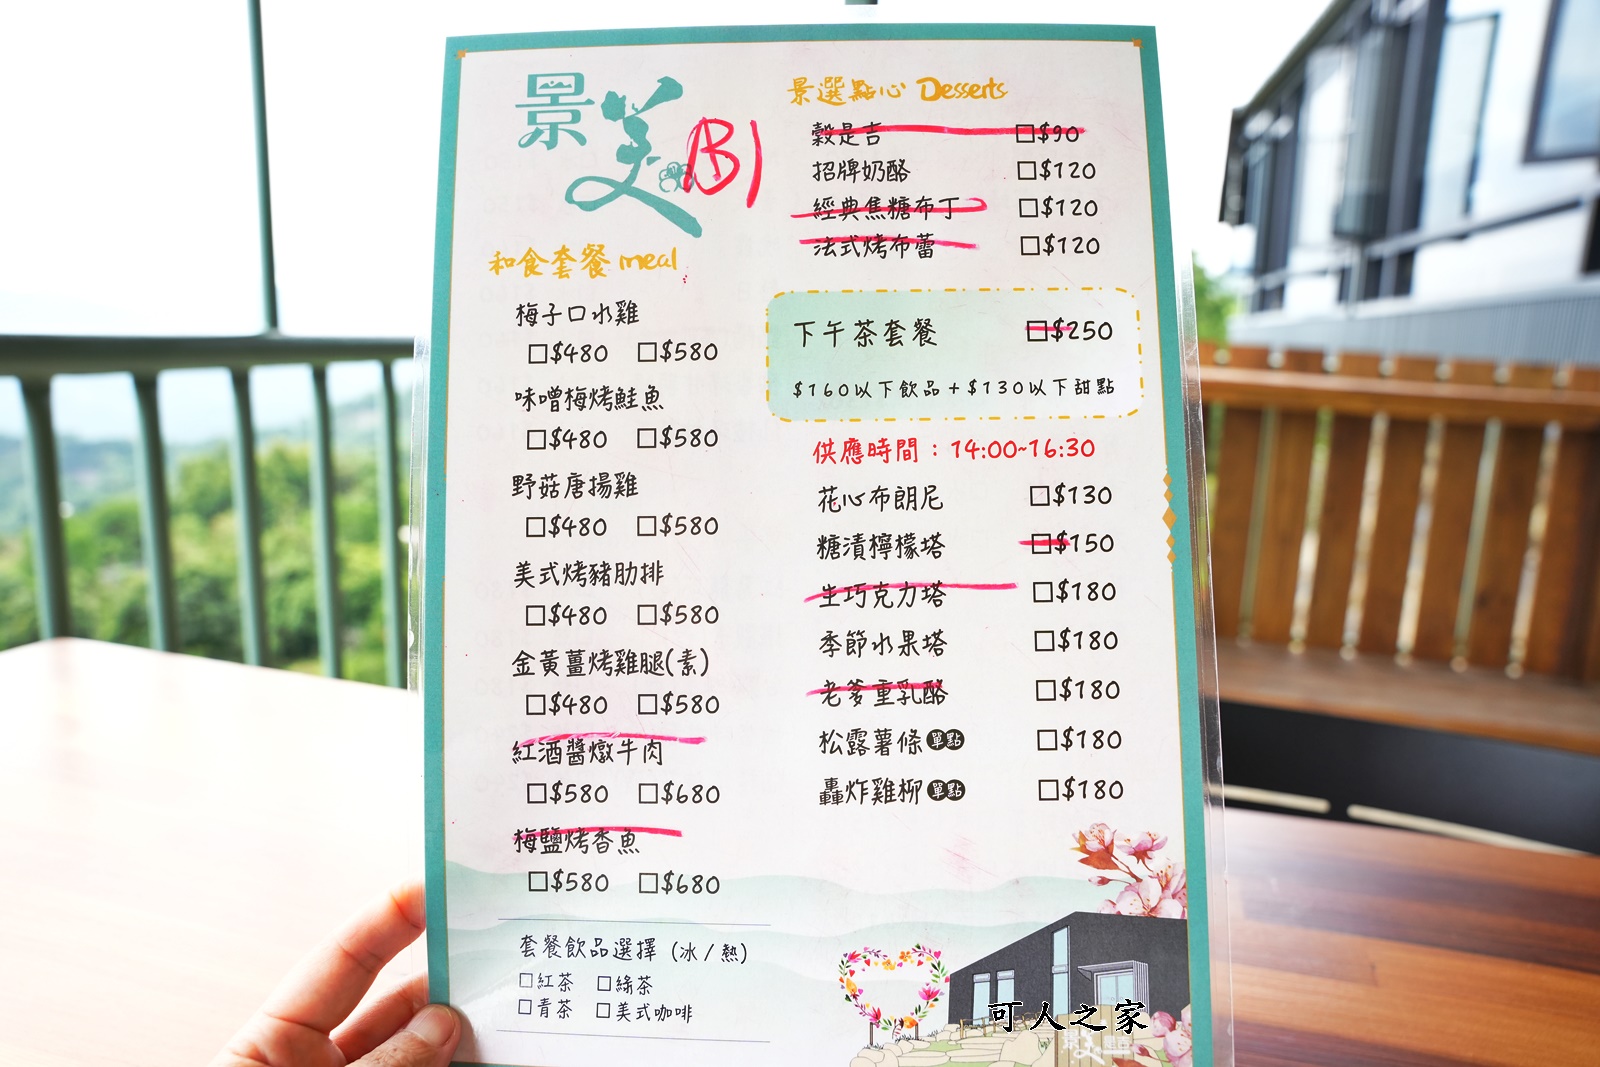 下午茶,台南下午茶,台南景觀山景,台南景觀餐廳,景美是吉景觀咖啡餐廳,約會景點,阿勃勒